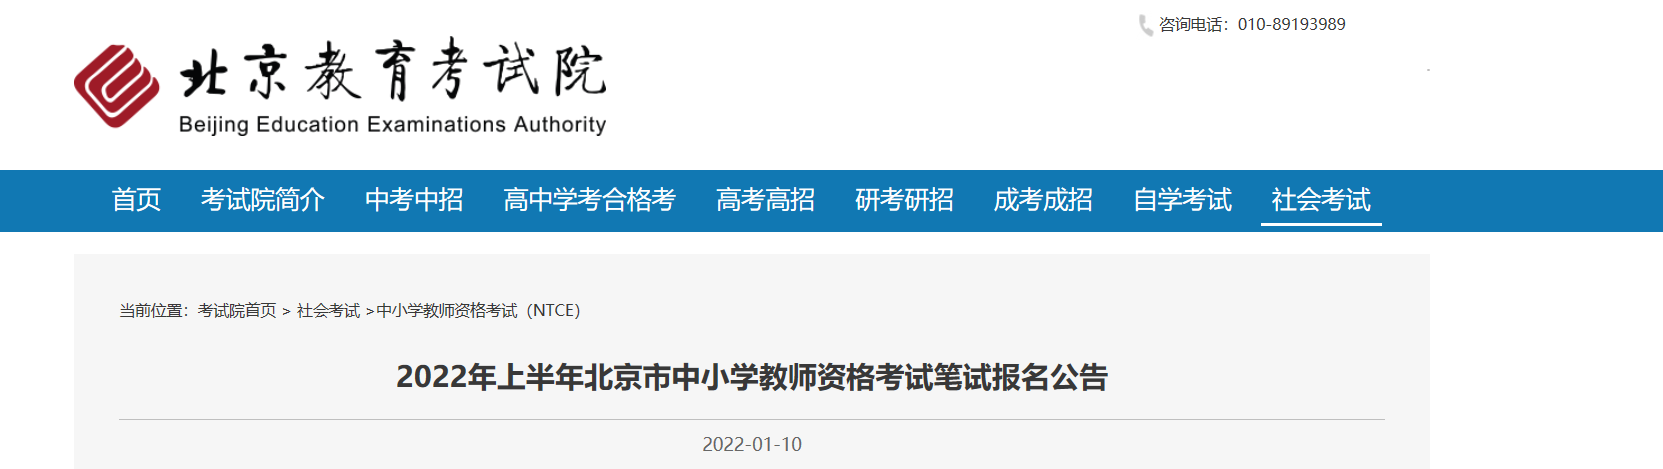 2022年上半年北京中小学教师资格笔试考试报名条件及入口【1月24日-1月27日】